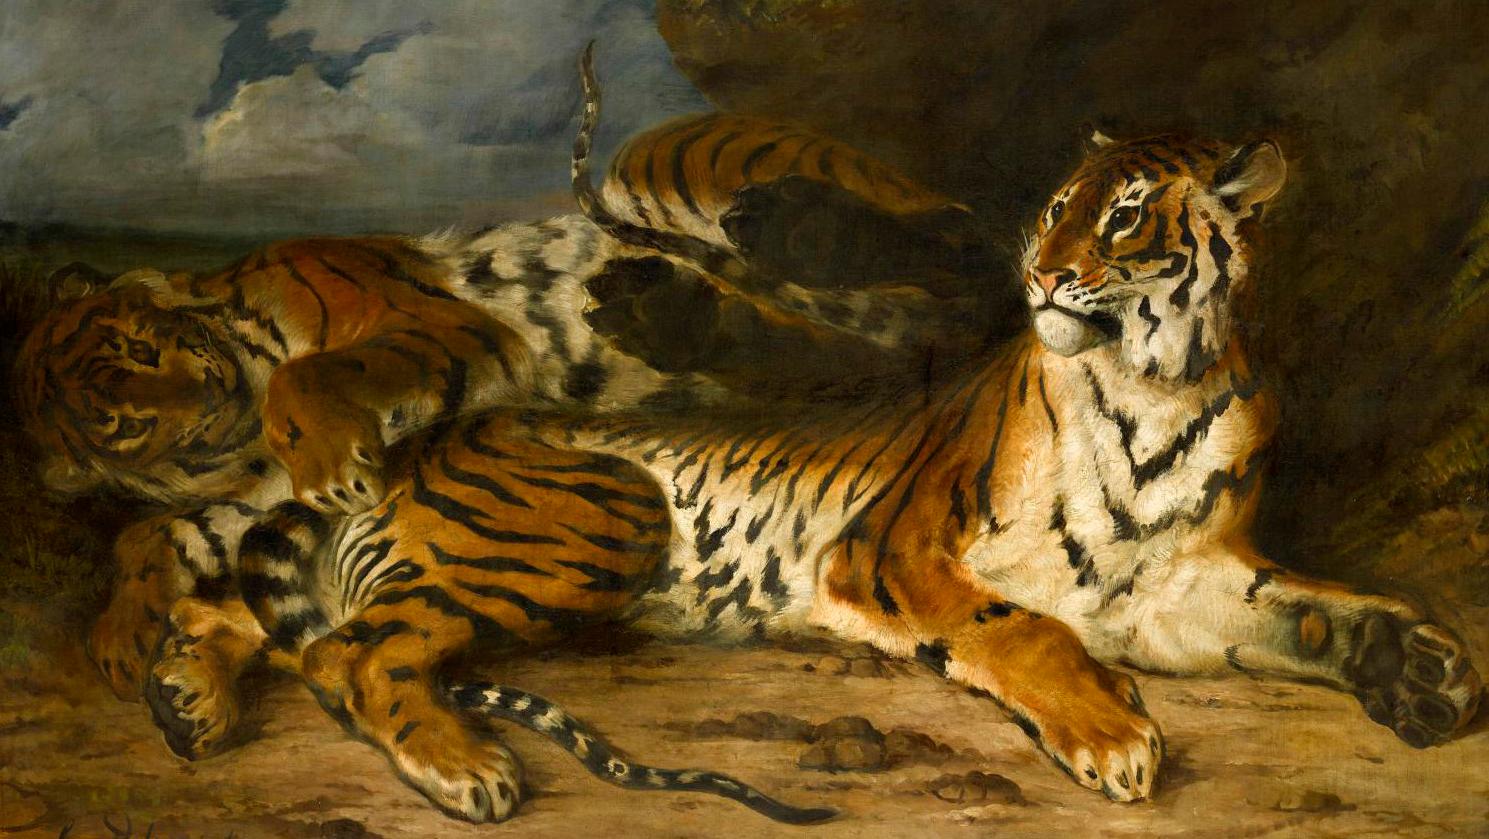 Eugène Delacroix (1798-1863), Étude de deux tigres ou Jeune tigre jouant avec sa... Delacroix and Nature: A Lively, Intimate Exhibition